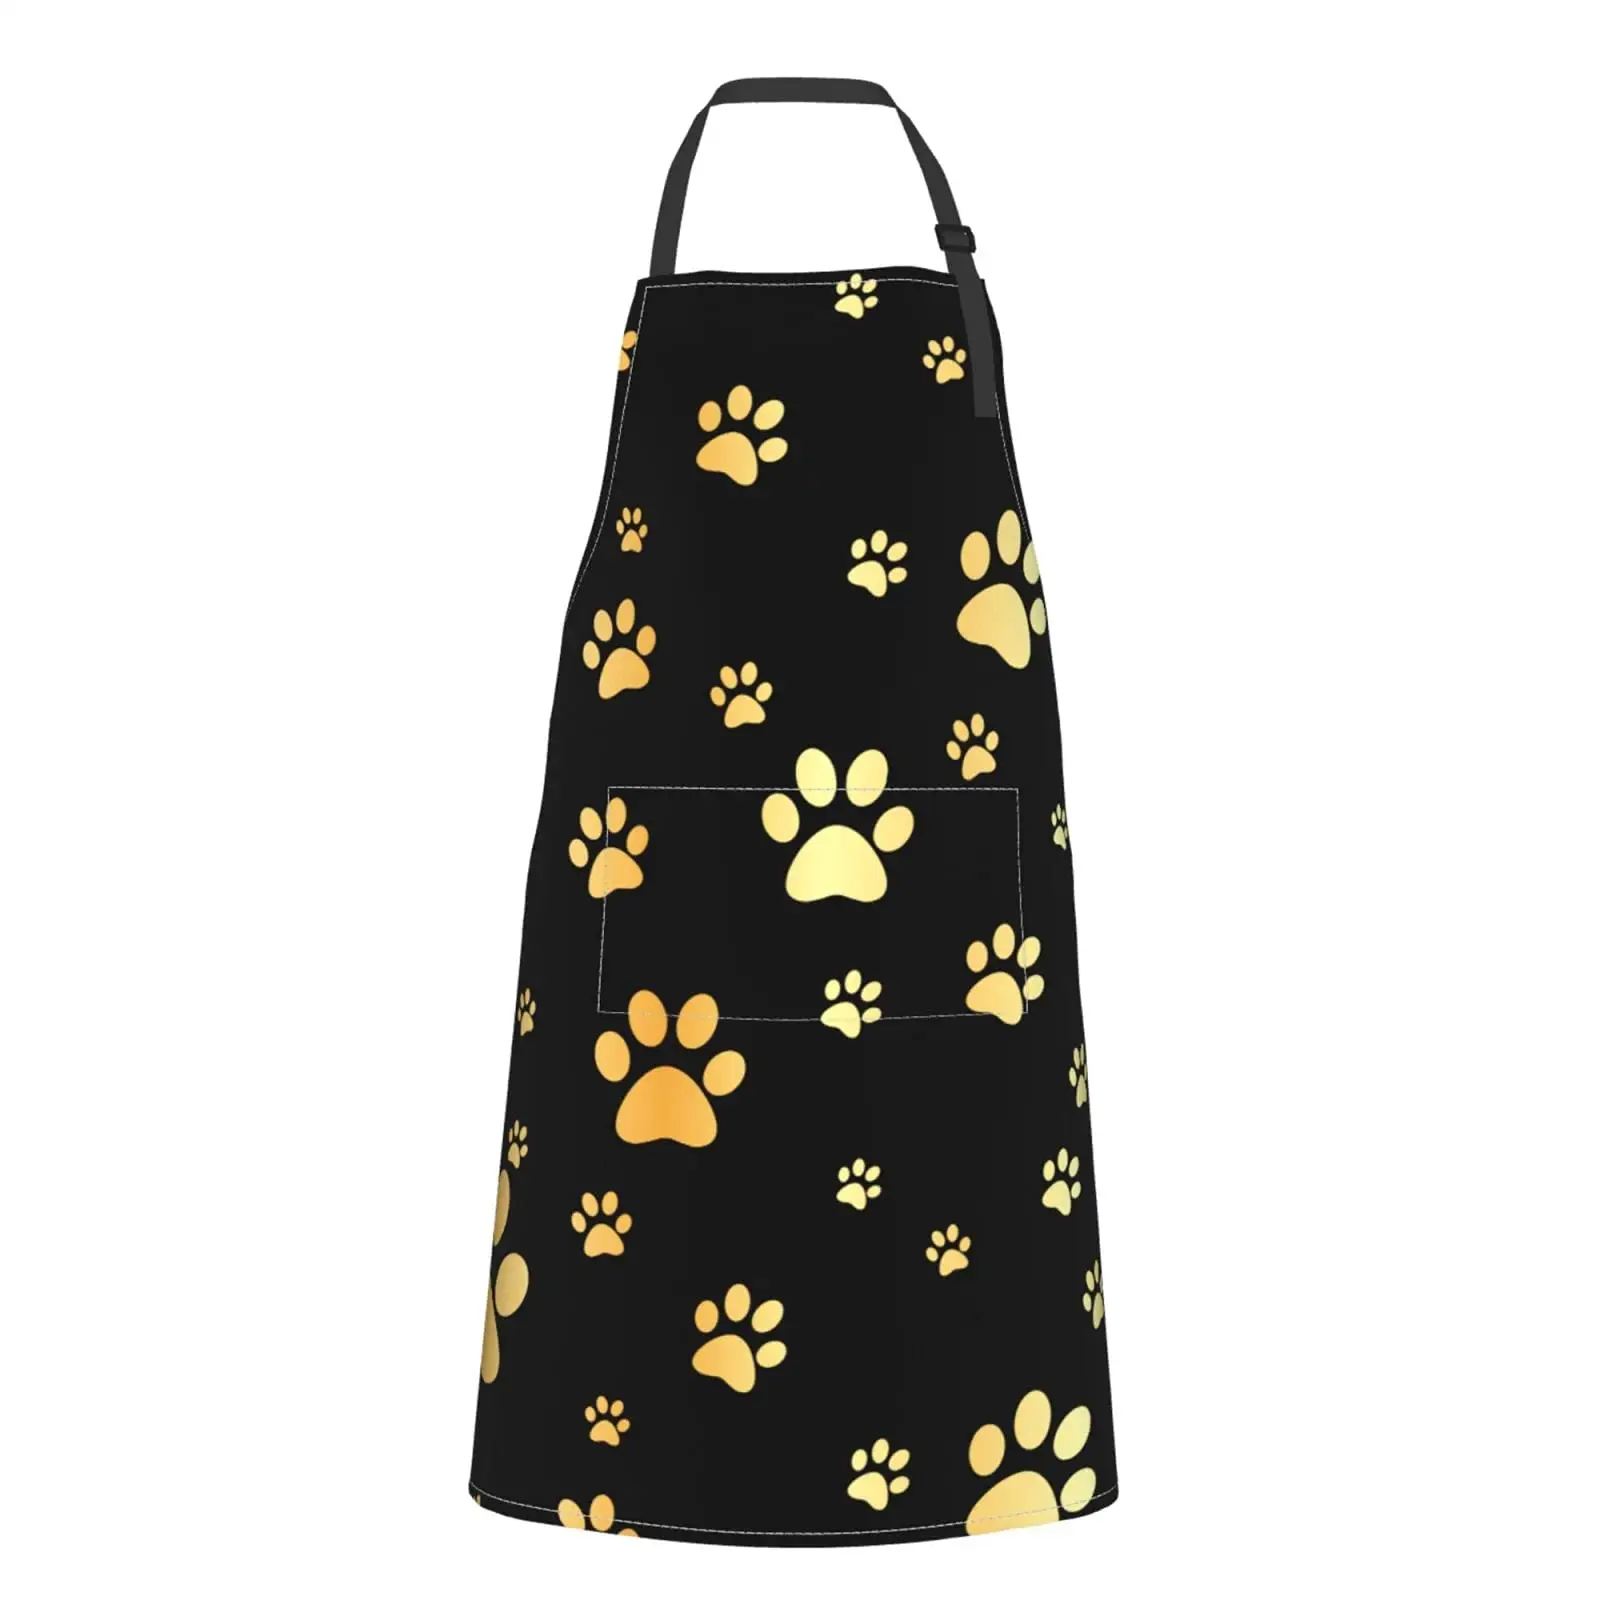 नवीनतम डिजाइन सोने कुत्ते पंजा प्रिंट पैटर्न पर्यावरण के अनुकूल महाराज एप्रन टिकाऊ काले महाराज रसोई Bbq खाना पकाने जोड़ी एप्रन